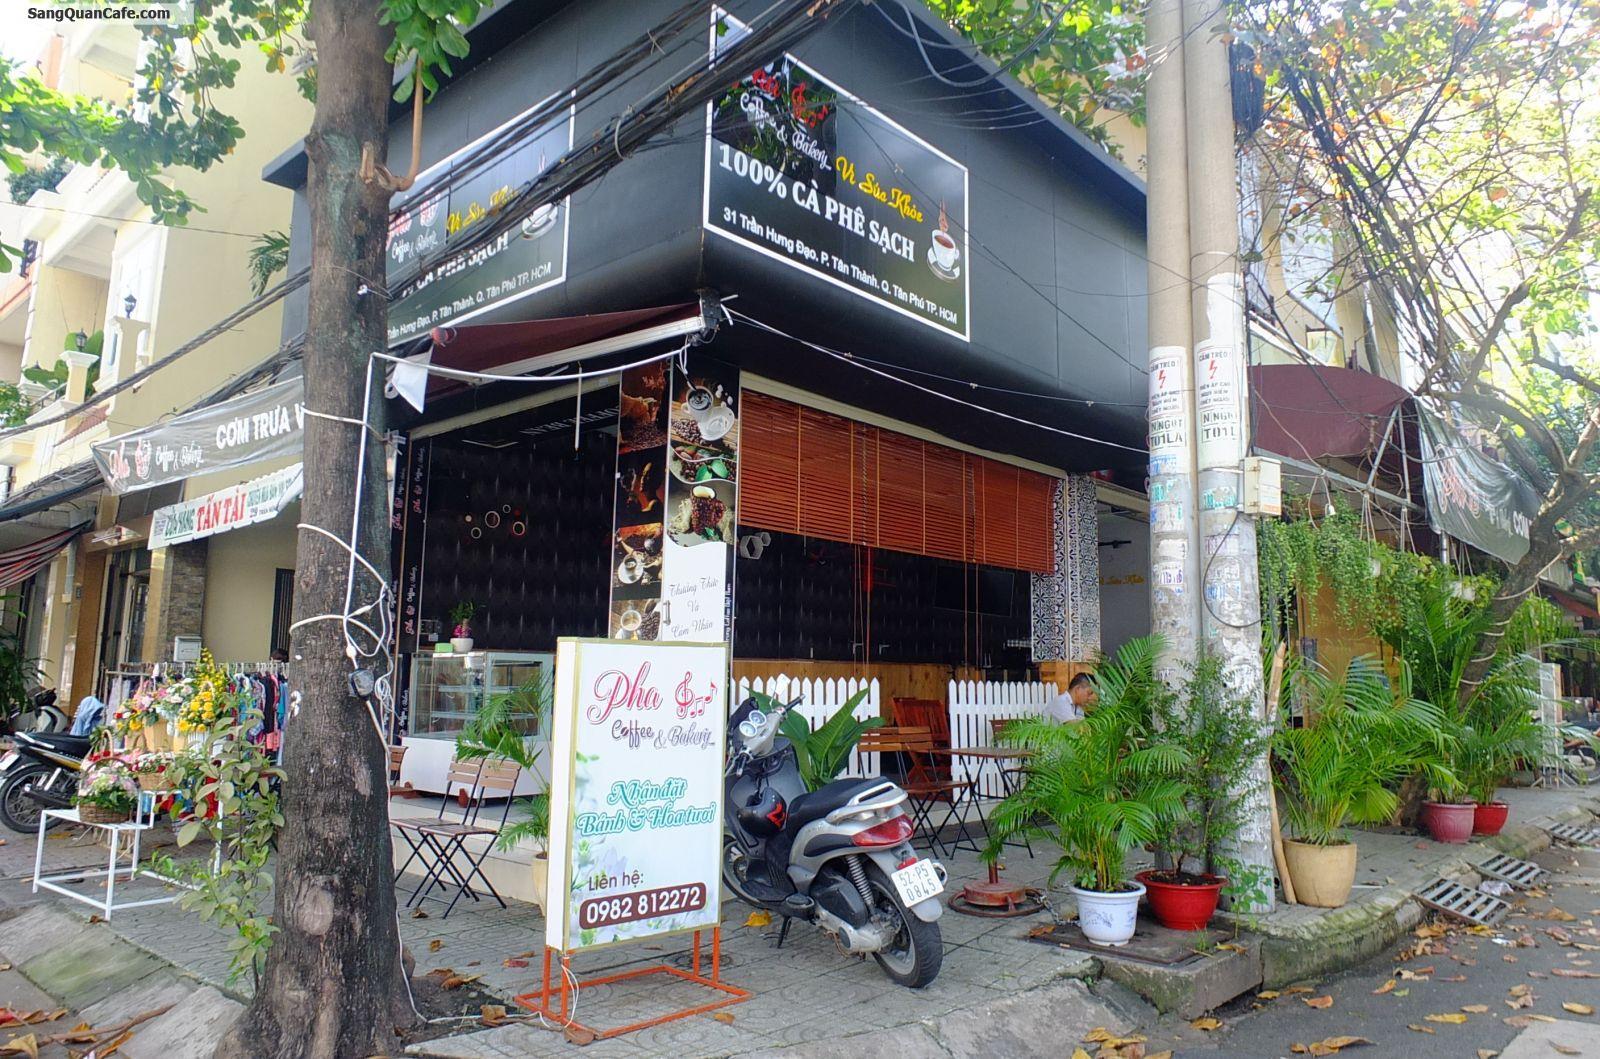 Sang Quán Cafe Góc 2 Mặt Tiền quận Tân Phú